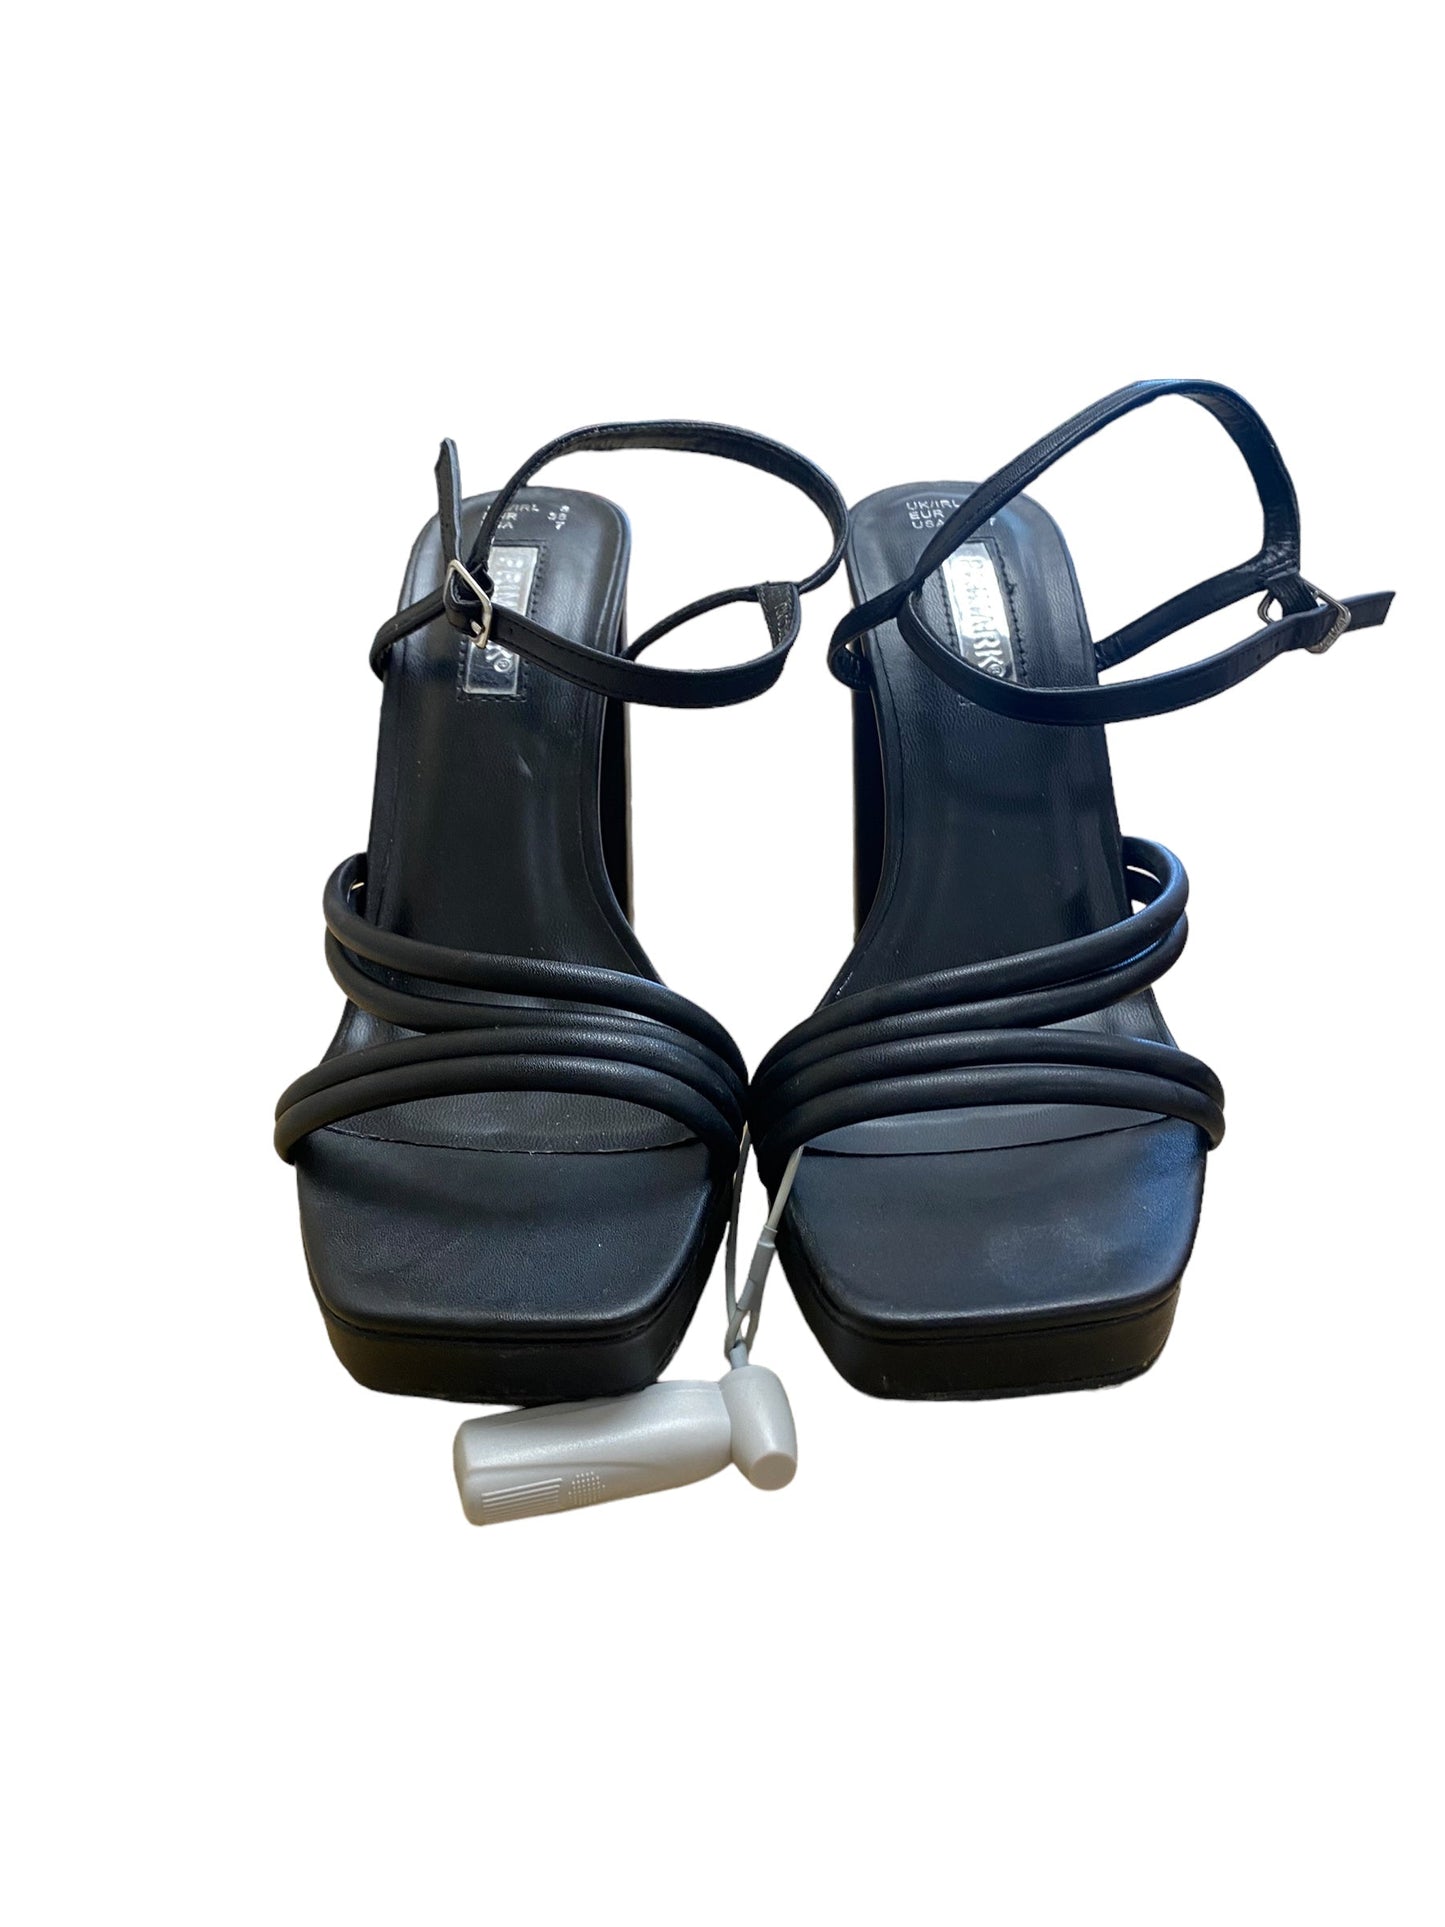 Black Shoes Heels Block Primark, Size 7